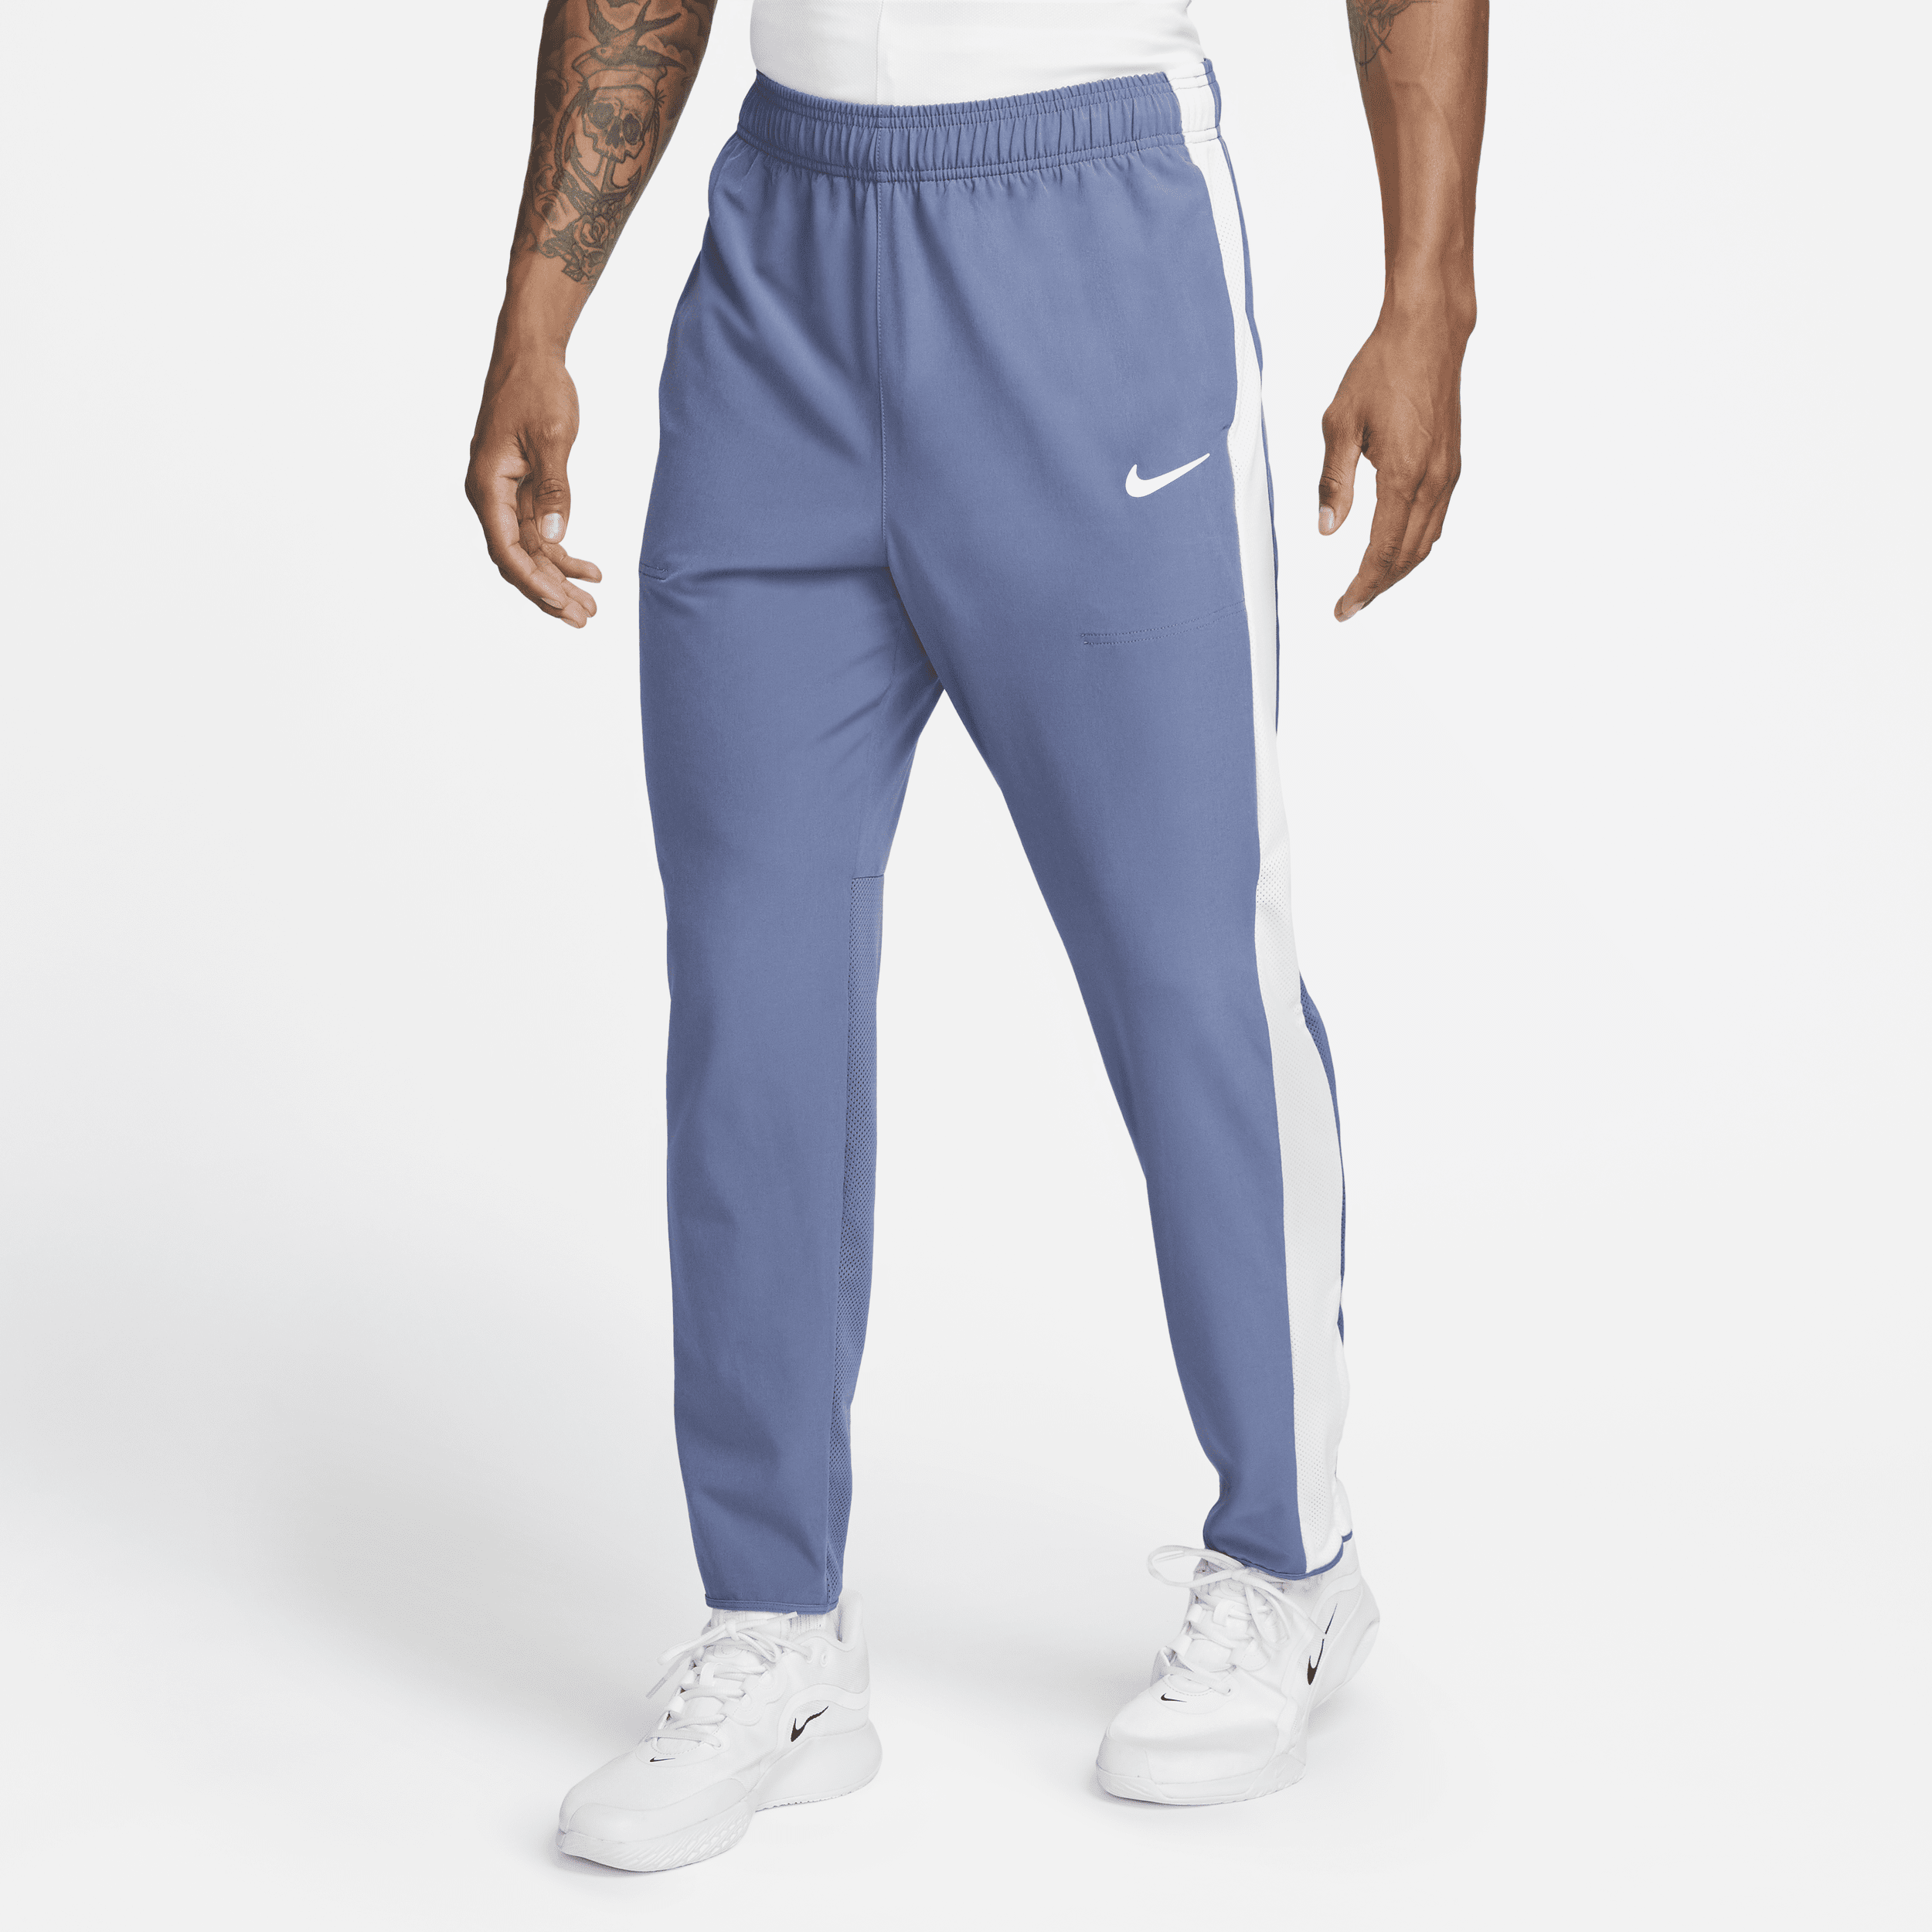 Shop NikeCourt Advantage Men's Tennis Trousers